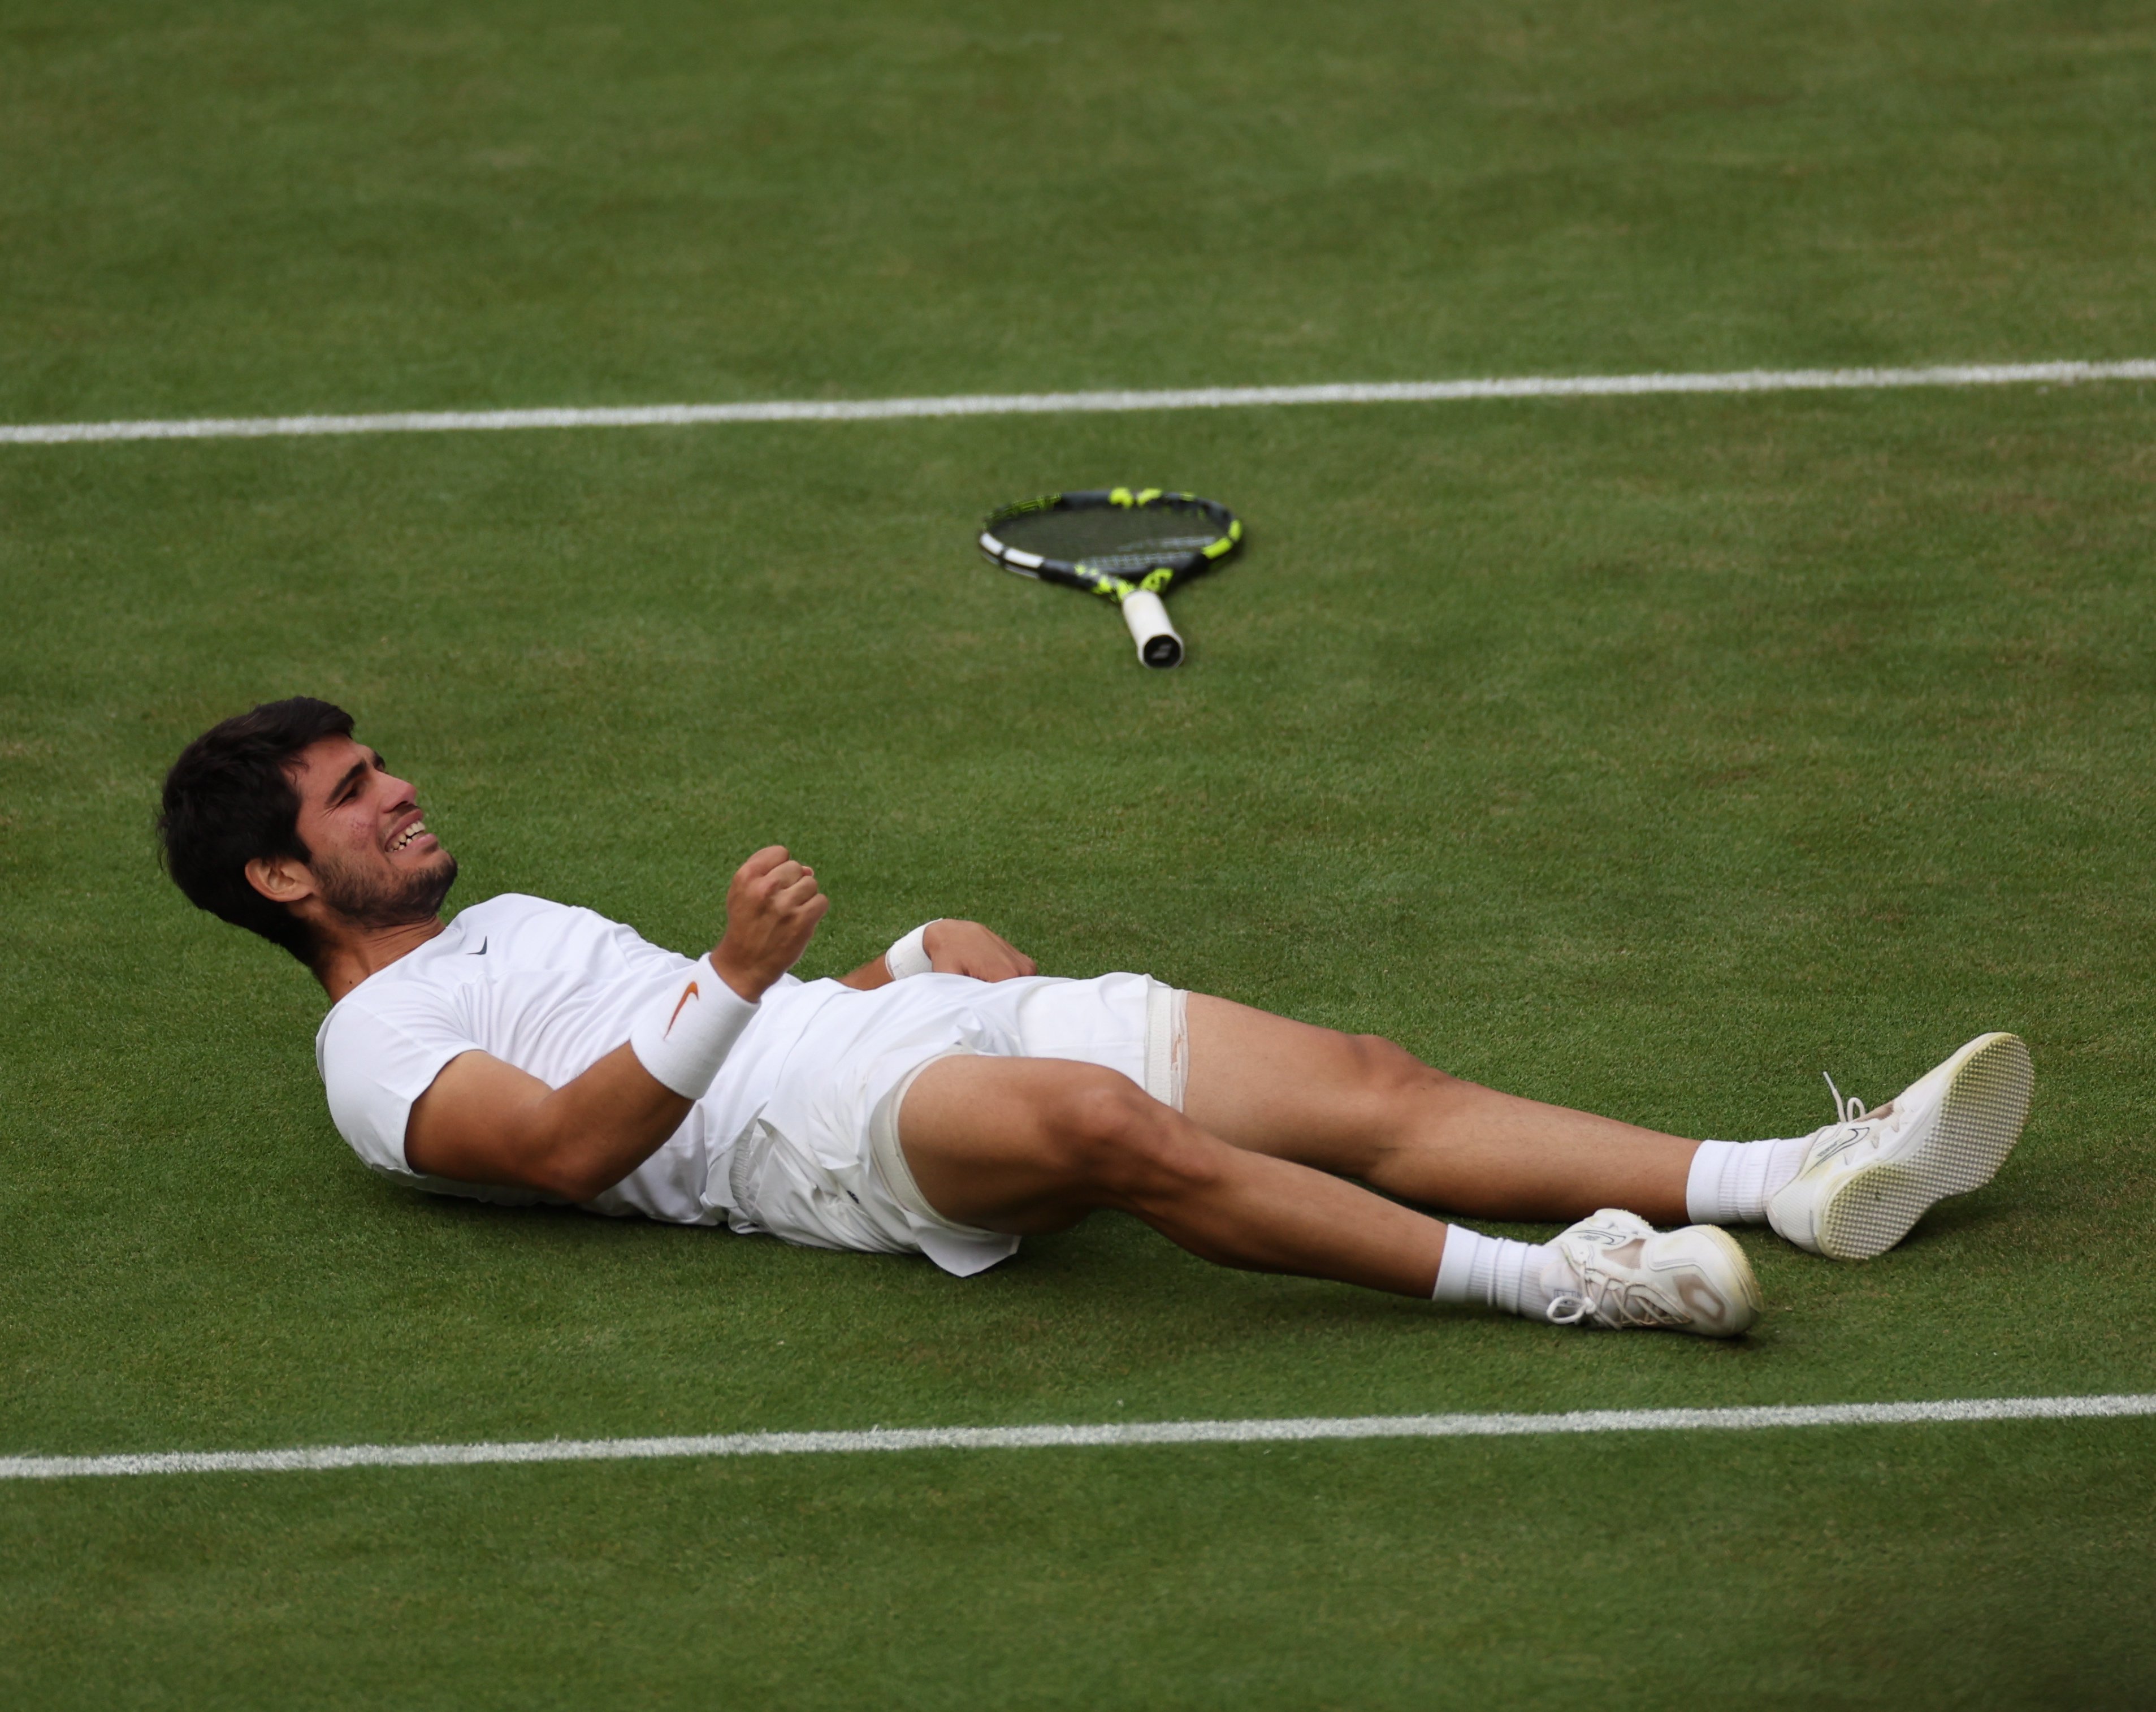 Un Carlos Alcaraz memorable destrona Djokovic de Wimbledon després d'una final llegendària